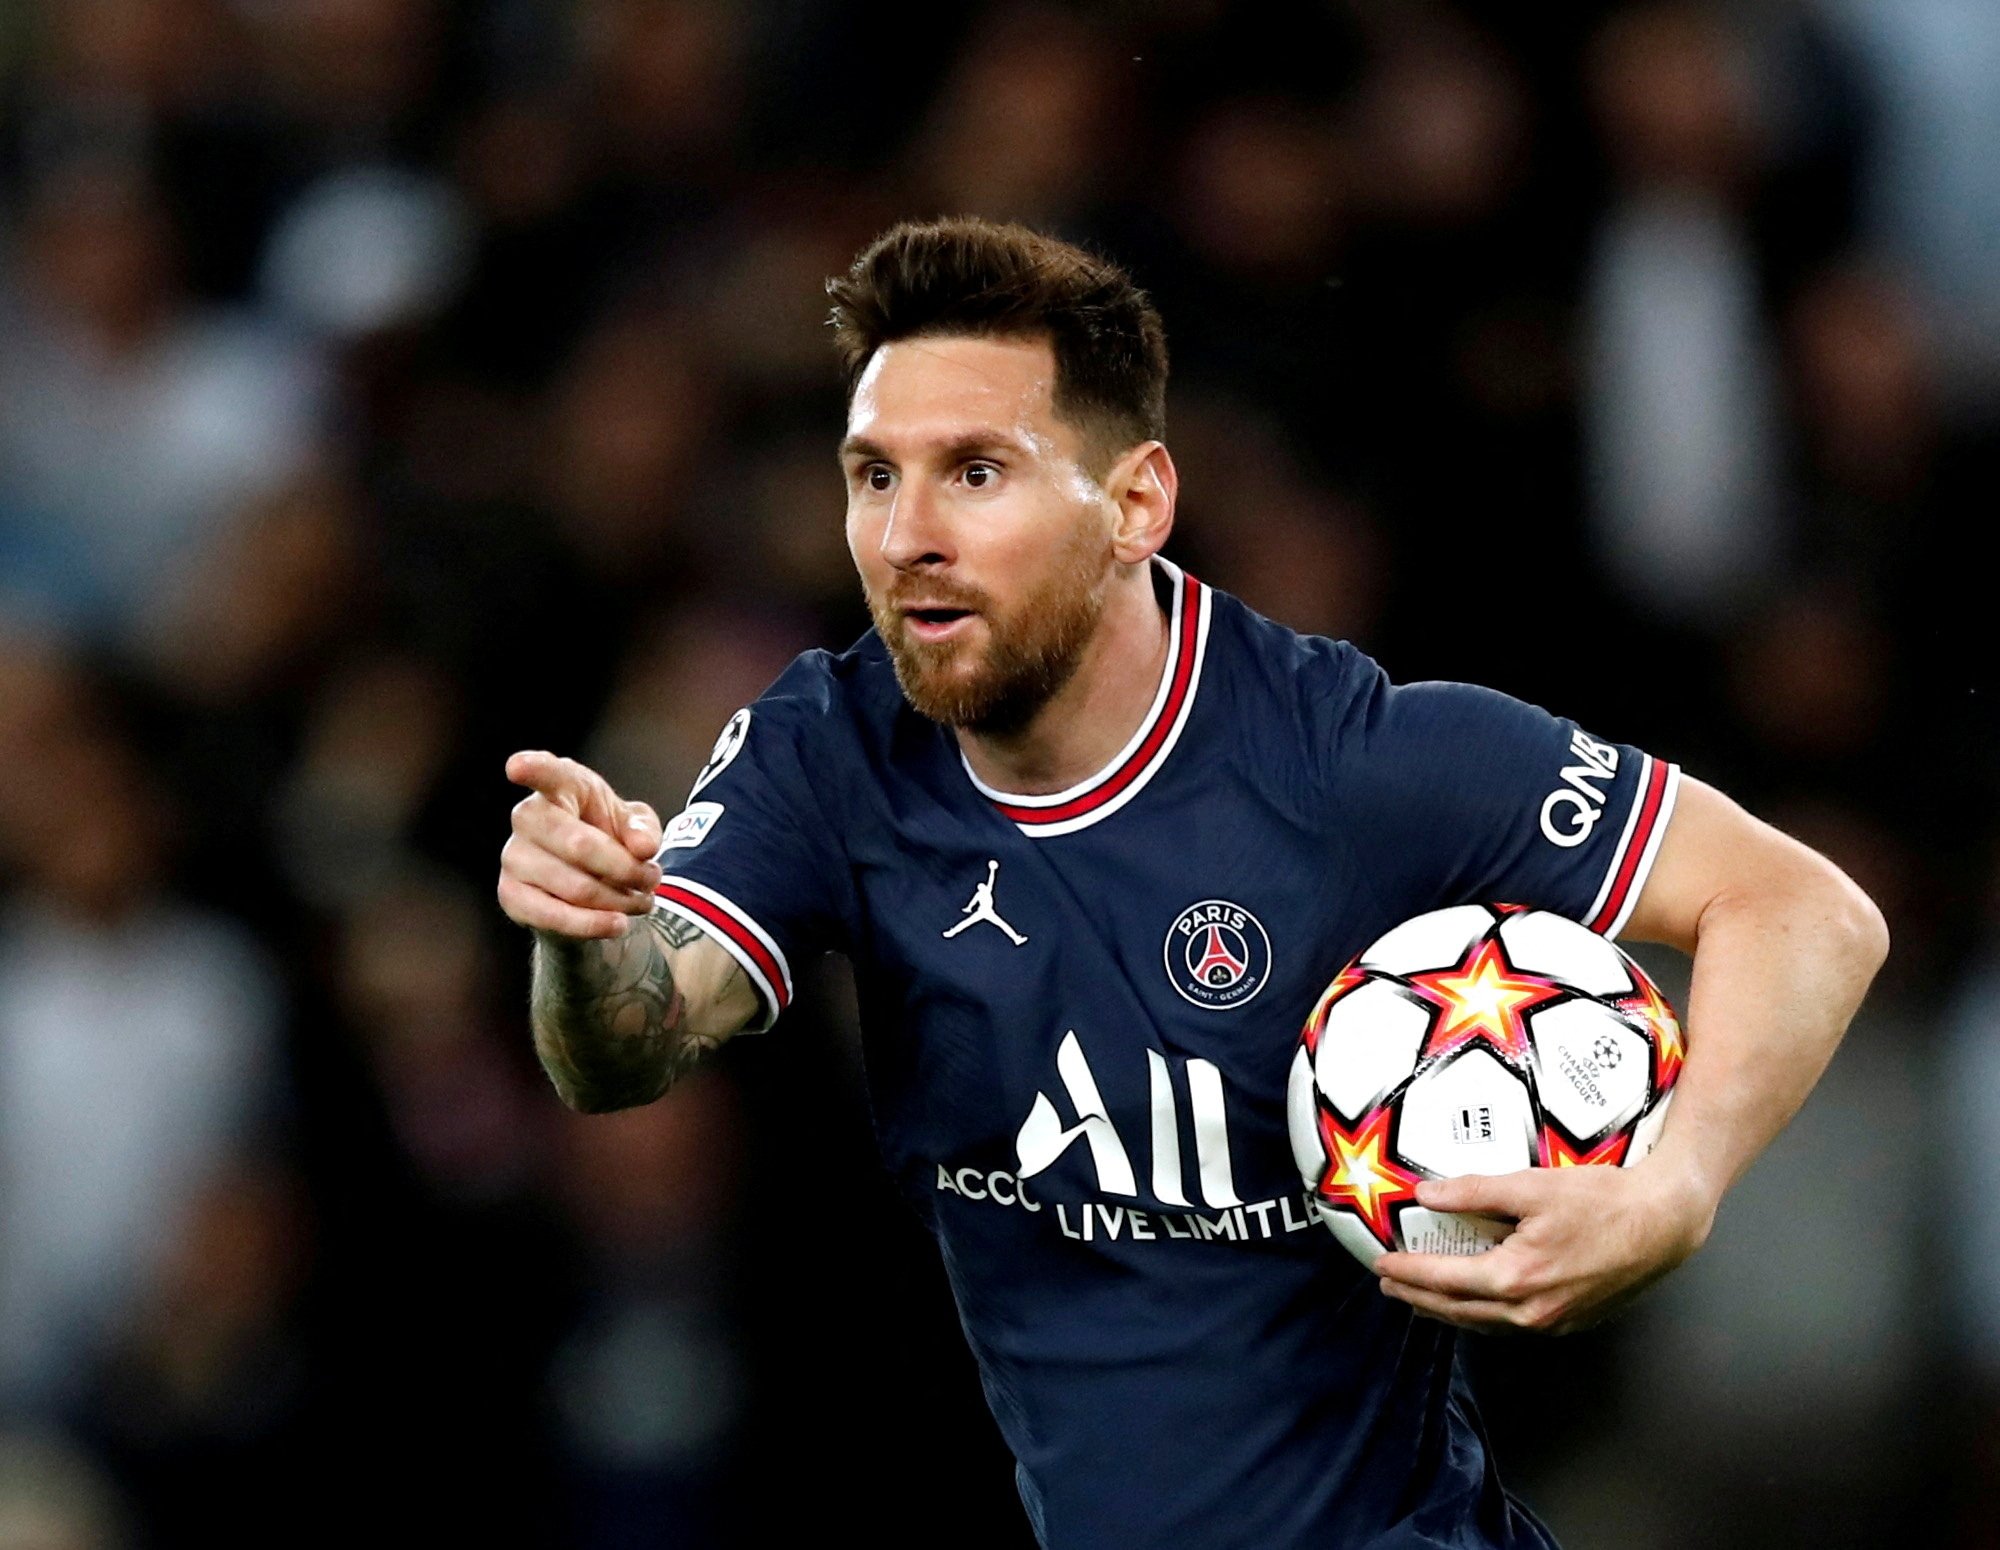 Paris Saint-Germain officially announce Messi's departure